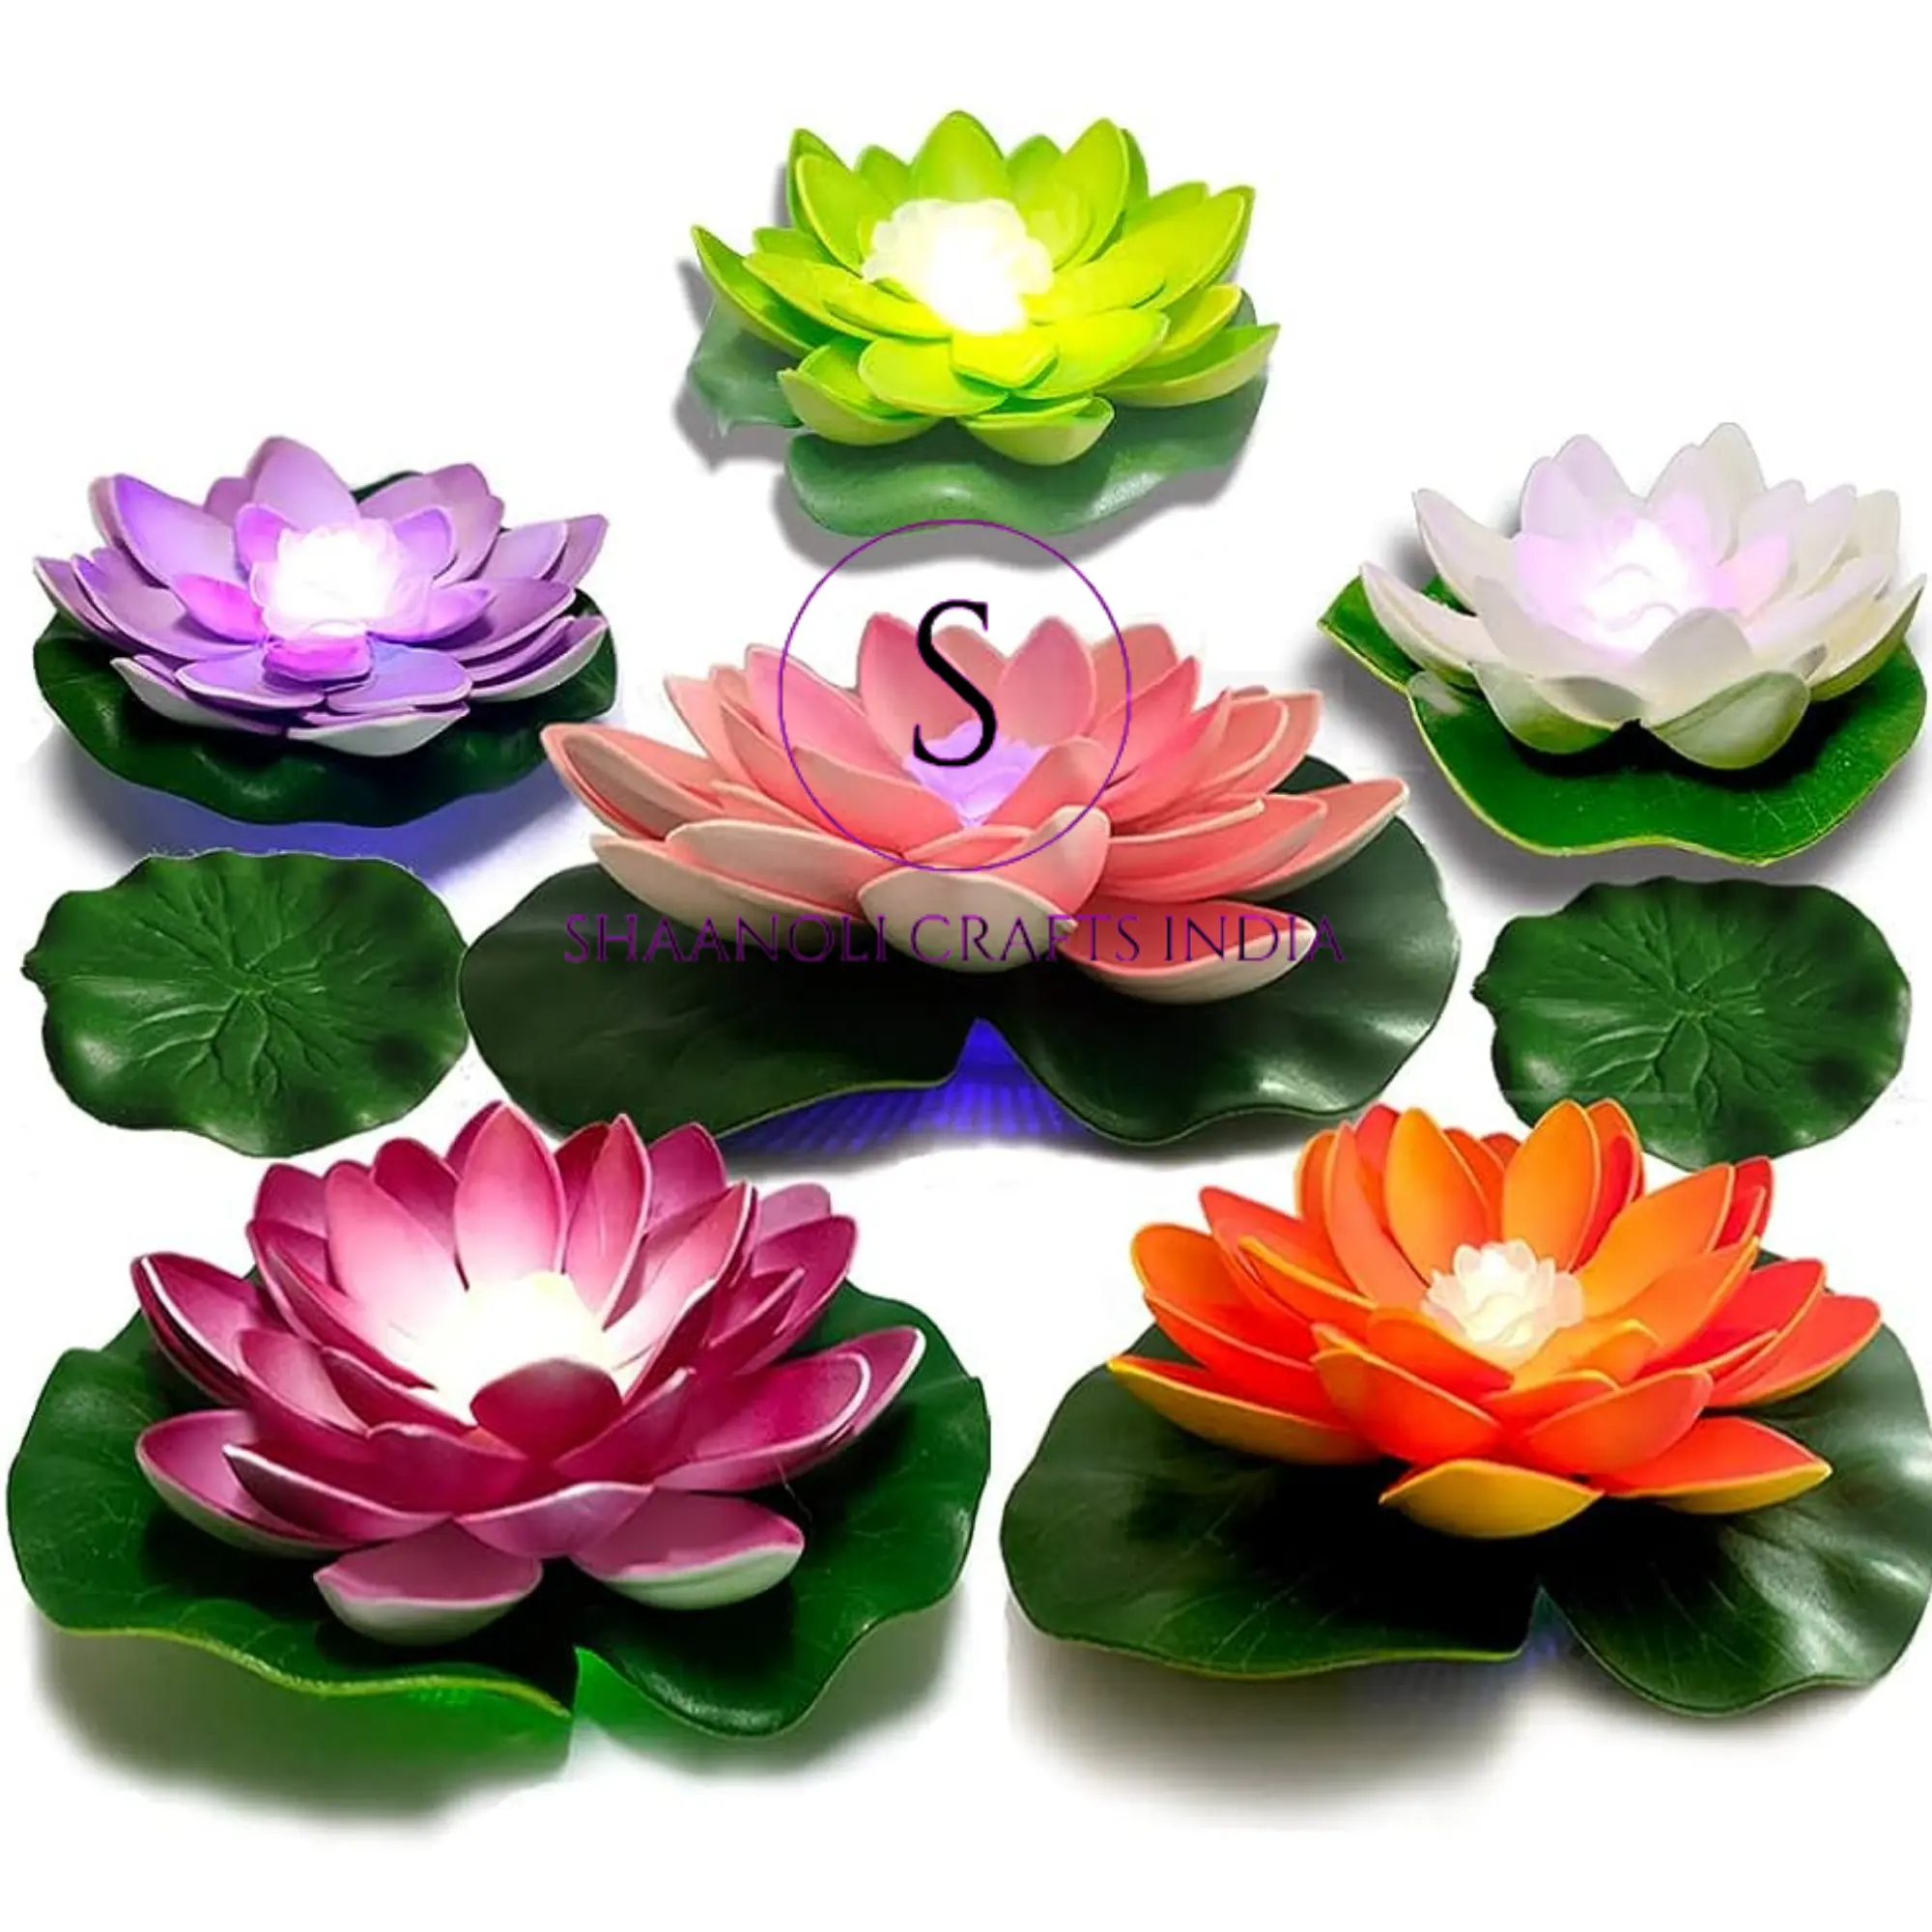 Led impermeable con pilas Artificial flotante flor de loto Led velas para Diwali, decoración del hogar de la boda